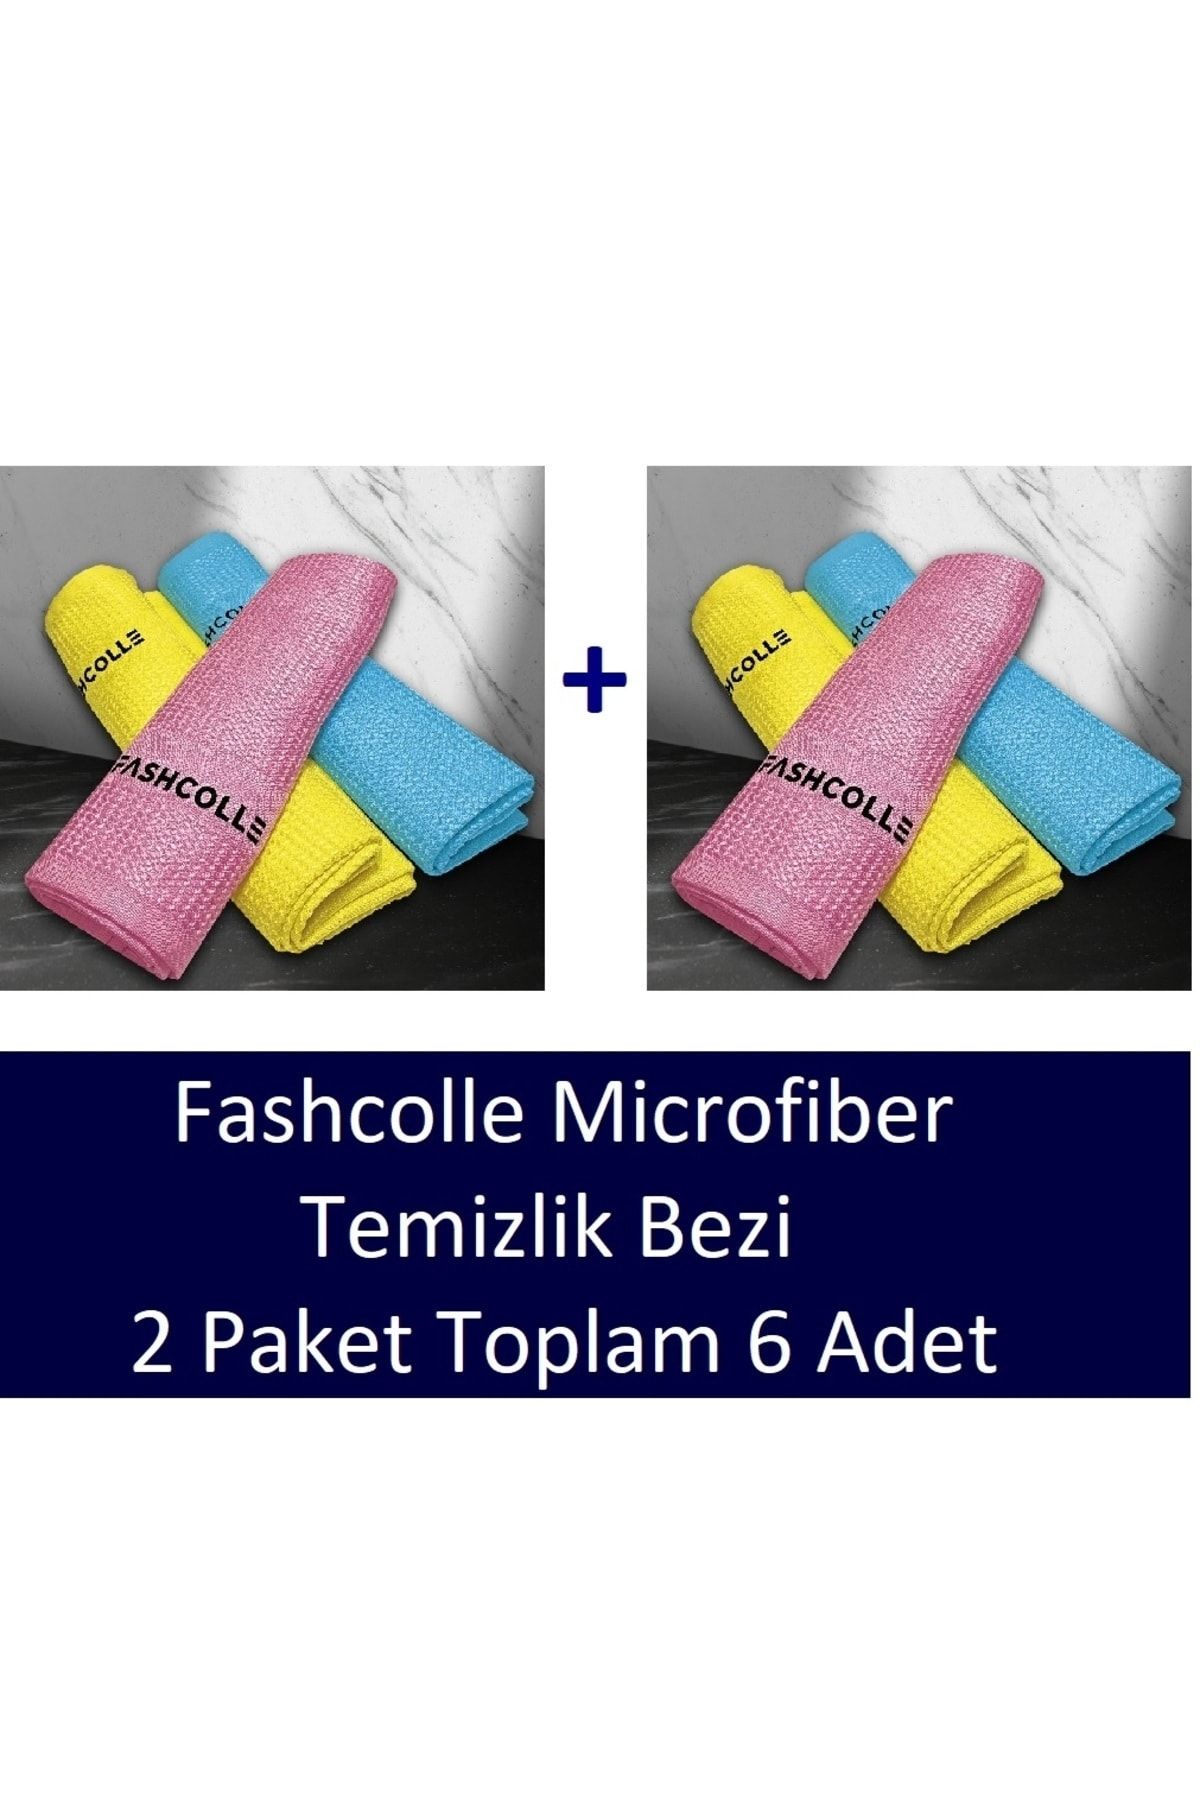 Fashcolle Mikrofiber Temizlik Bezi 3'lü x 2 Paket Toplam 6 Adet